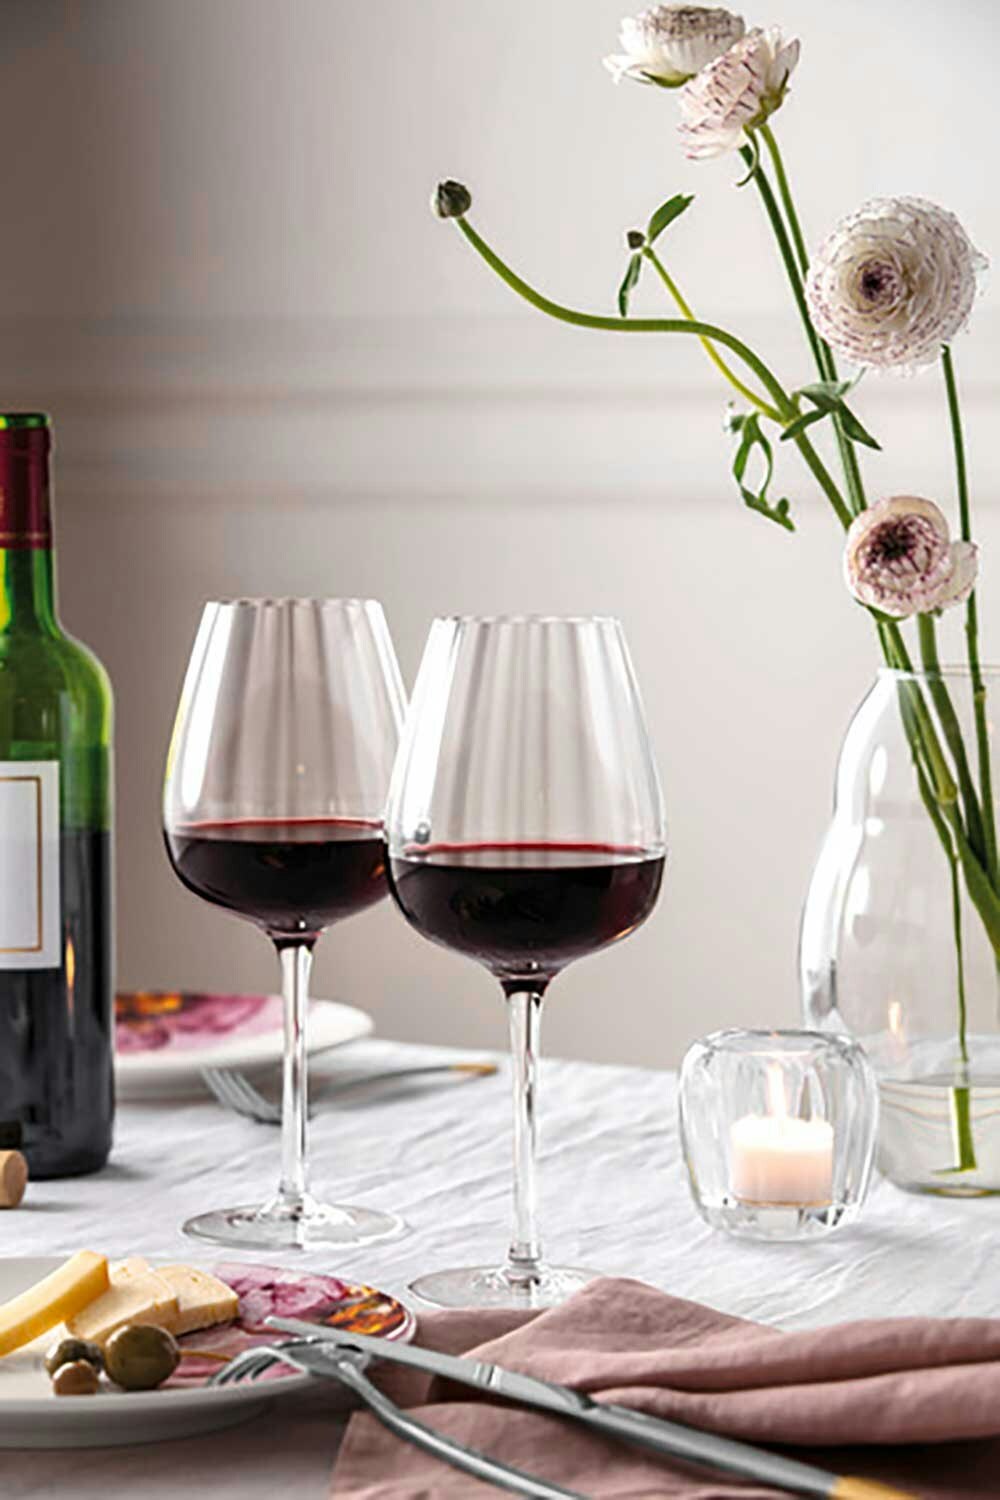 https://royaldesign.com/image/2/villeroy-boch-rose-garden-red-wine-goblet-set-4-pcs-2